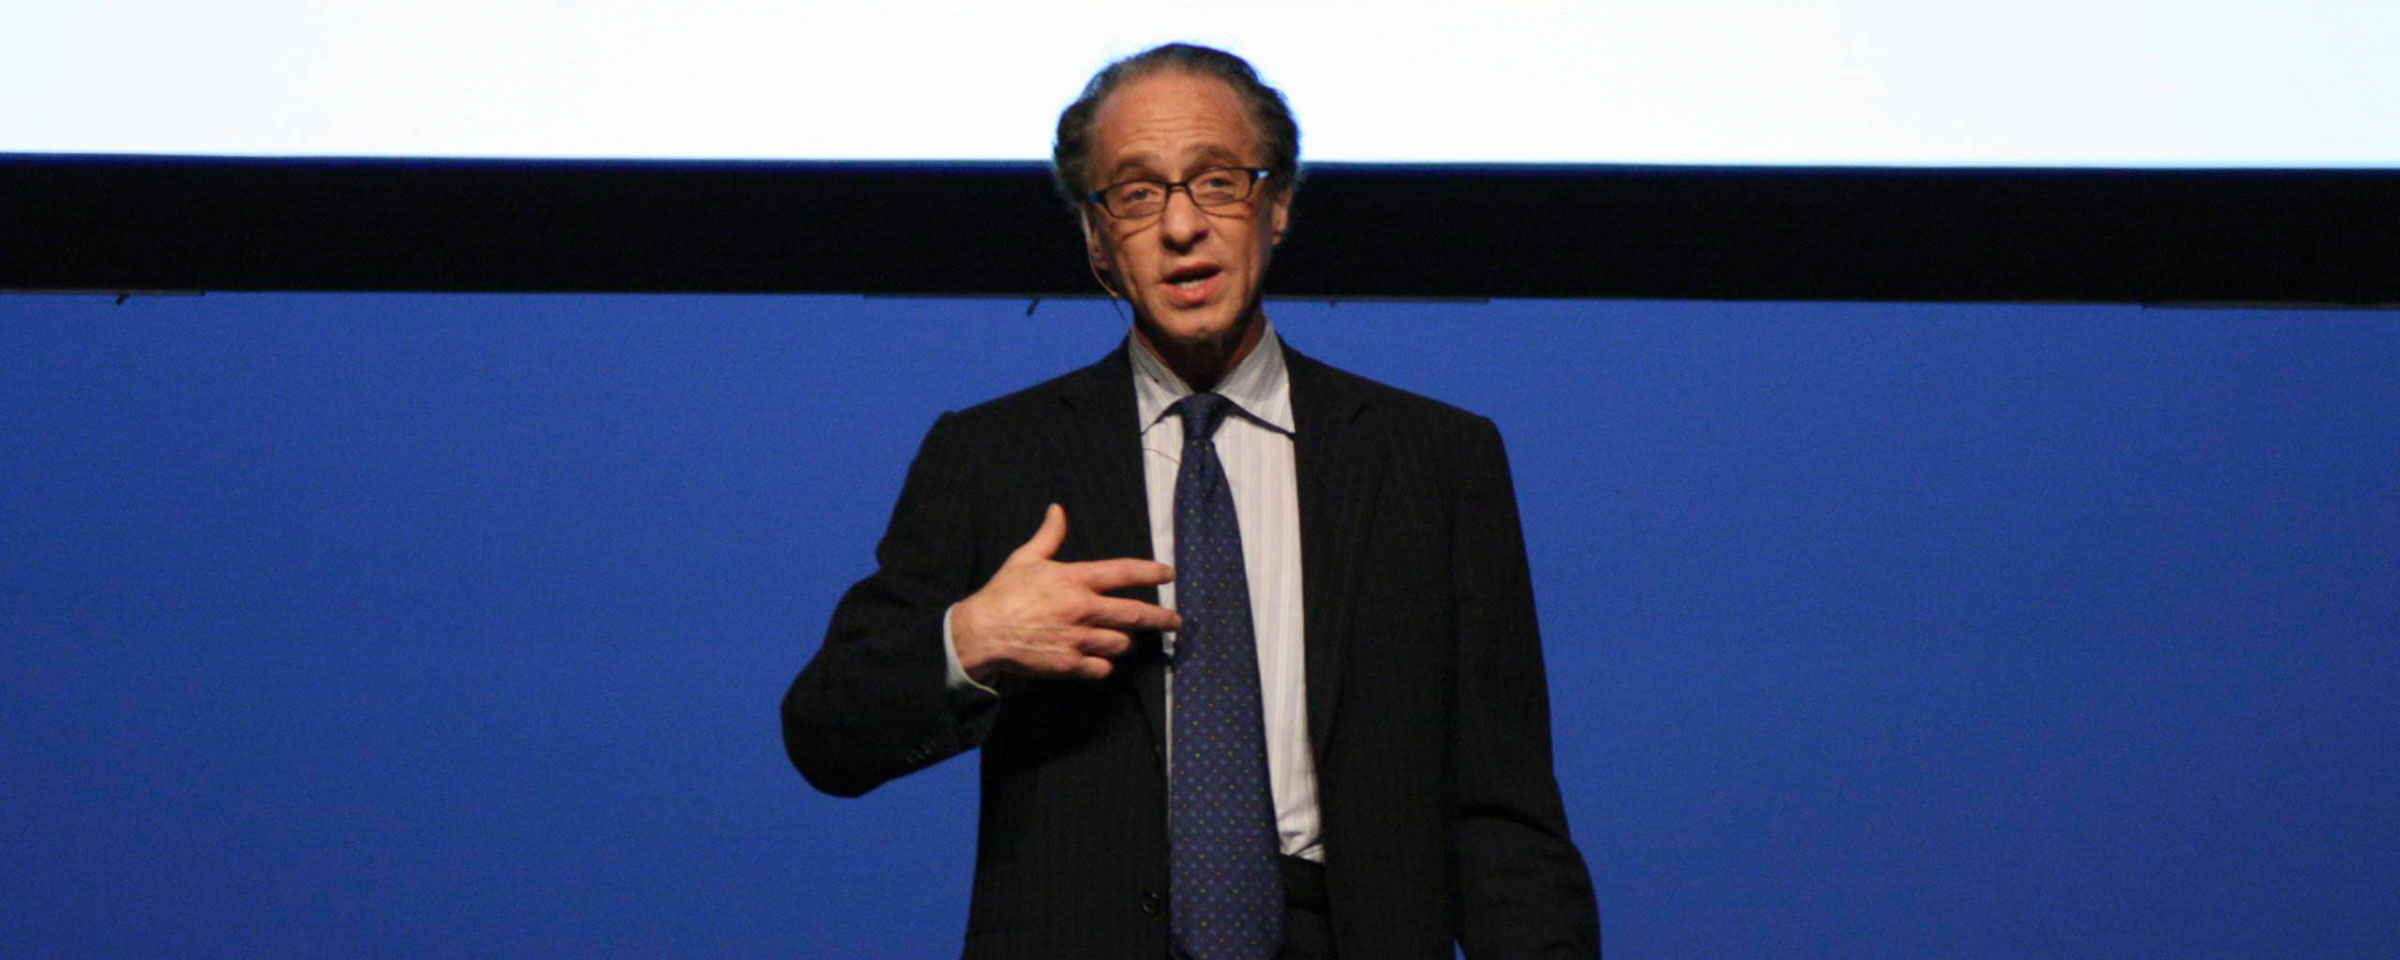 Ray Kurzweil hält eine Rede